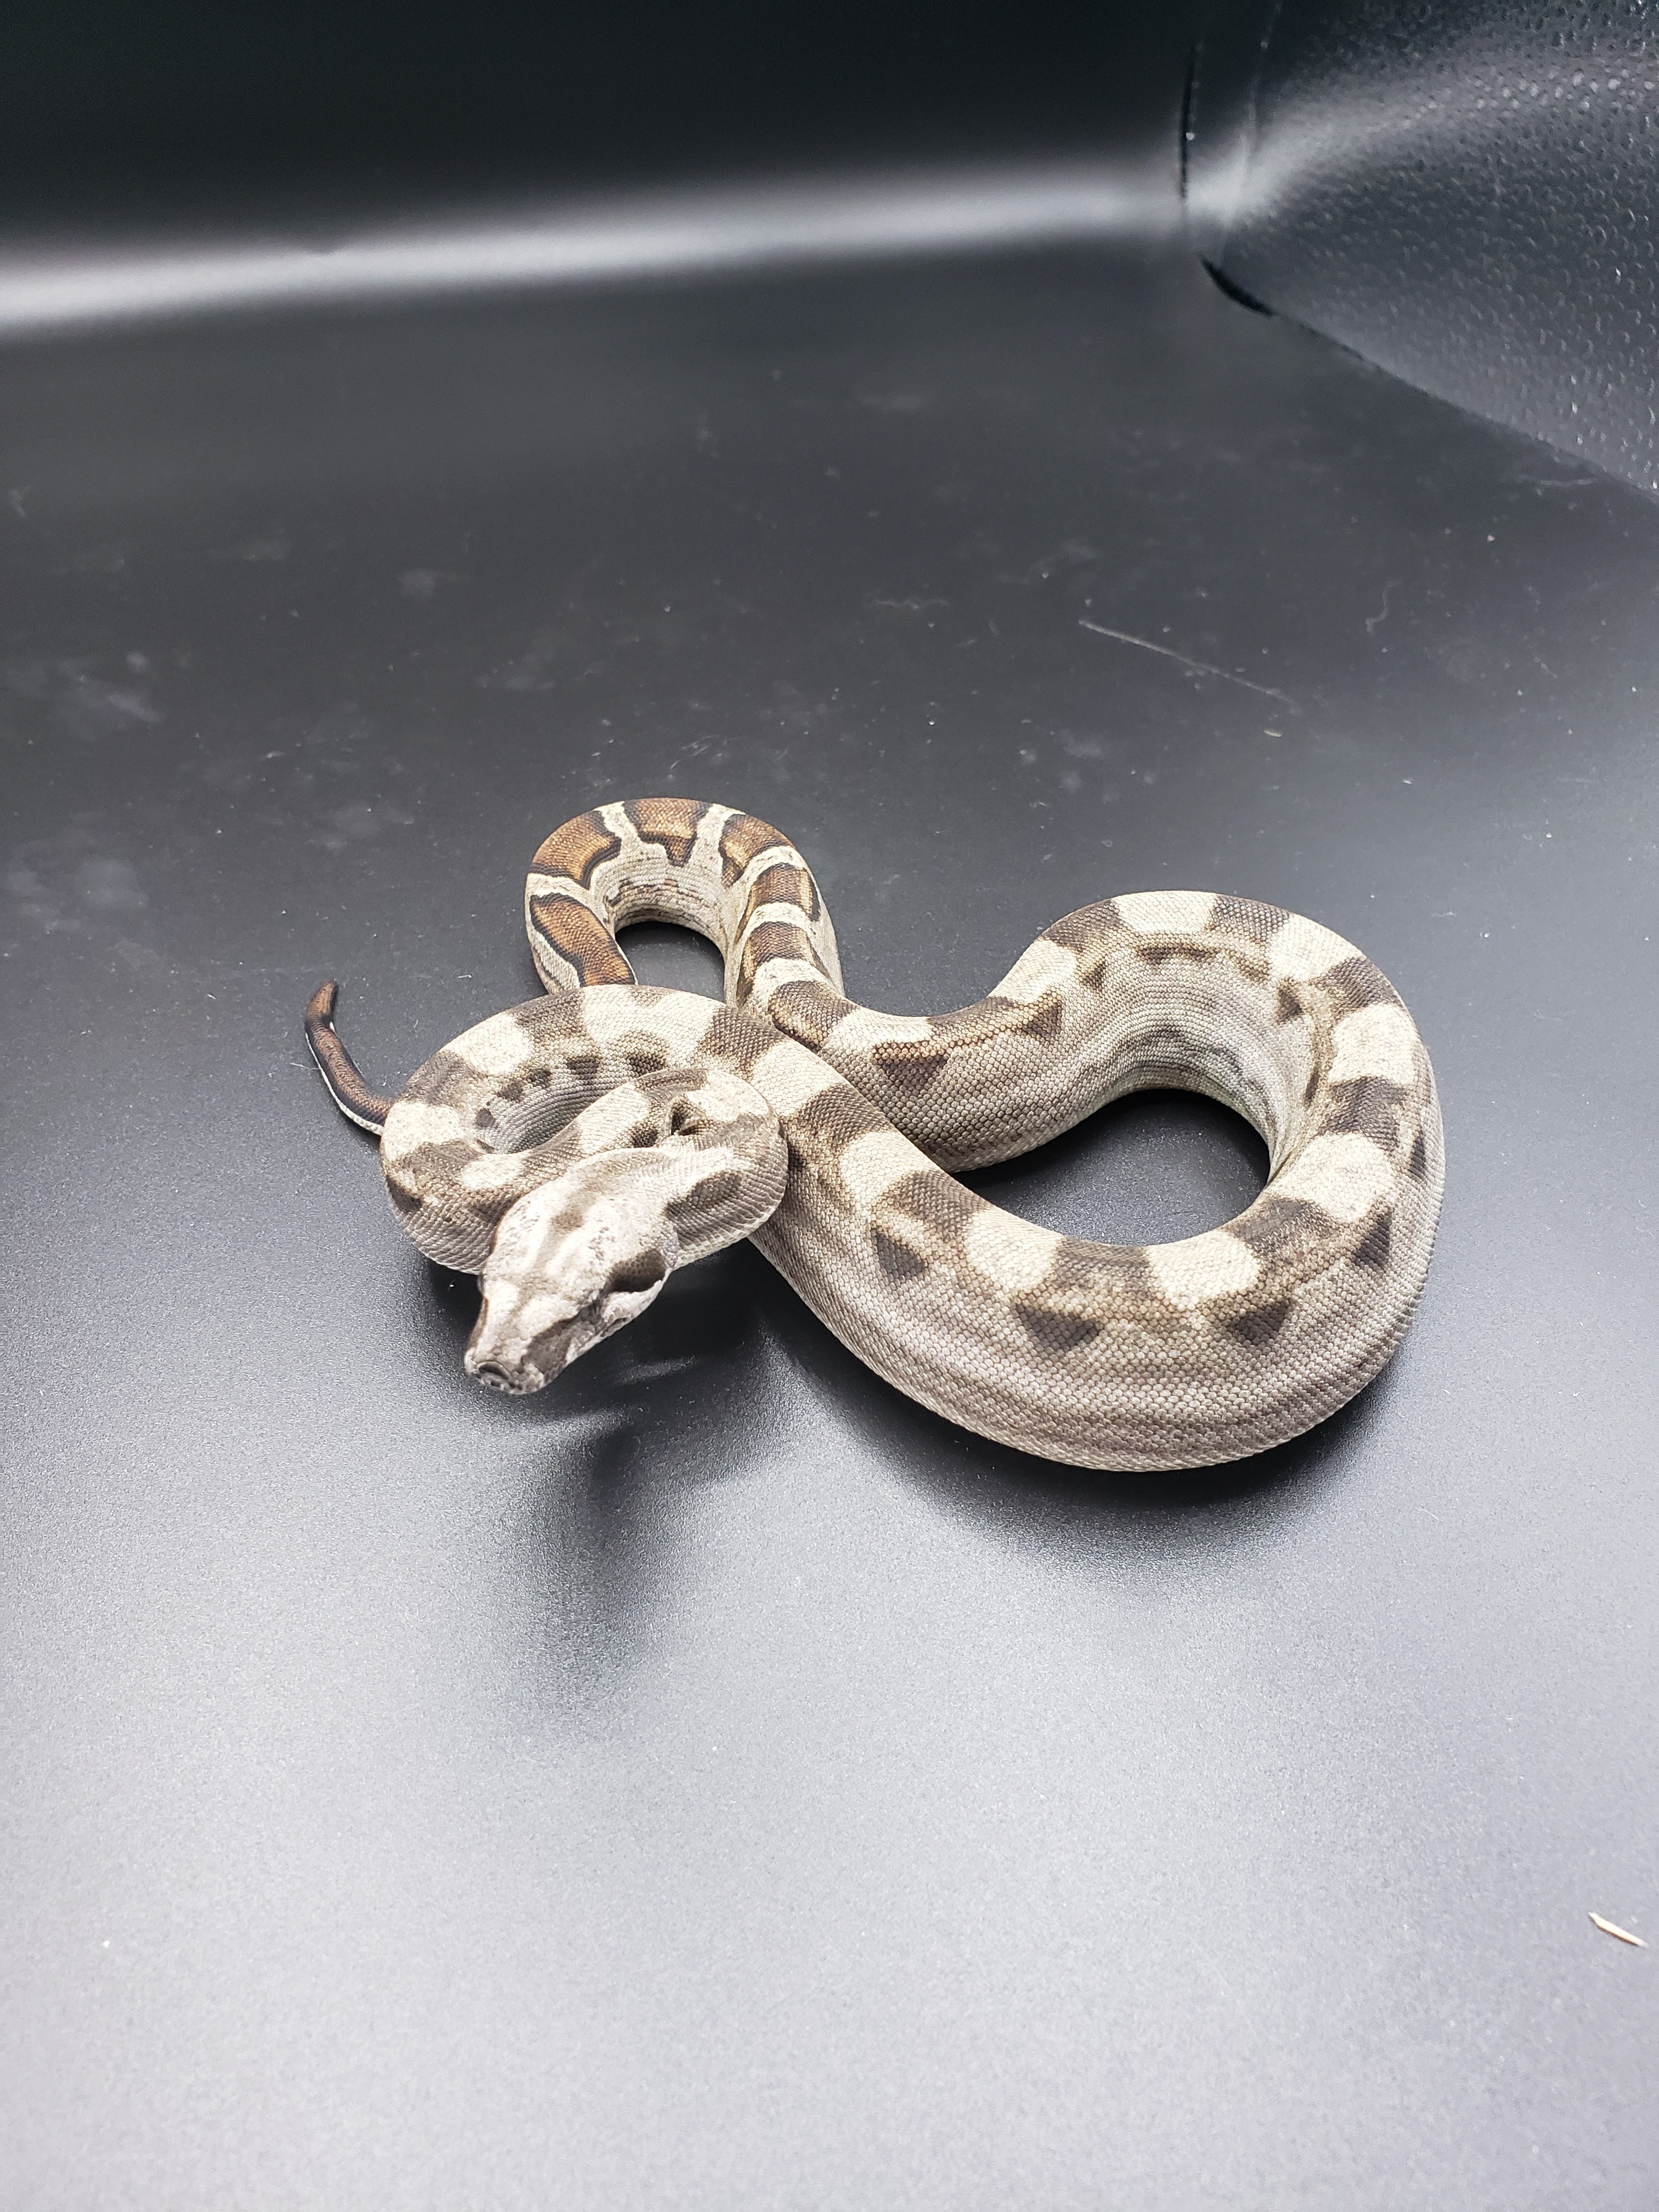 Motley Boa Constrictor by Hobos Snakes